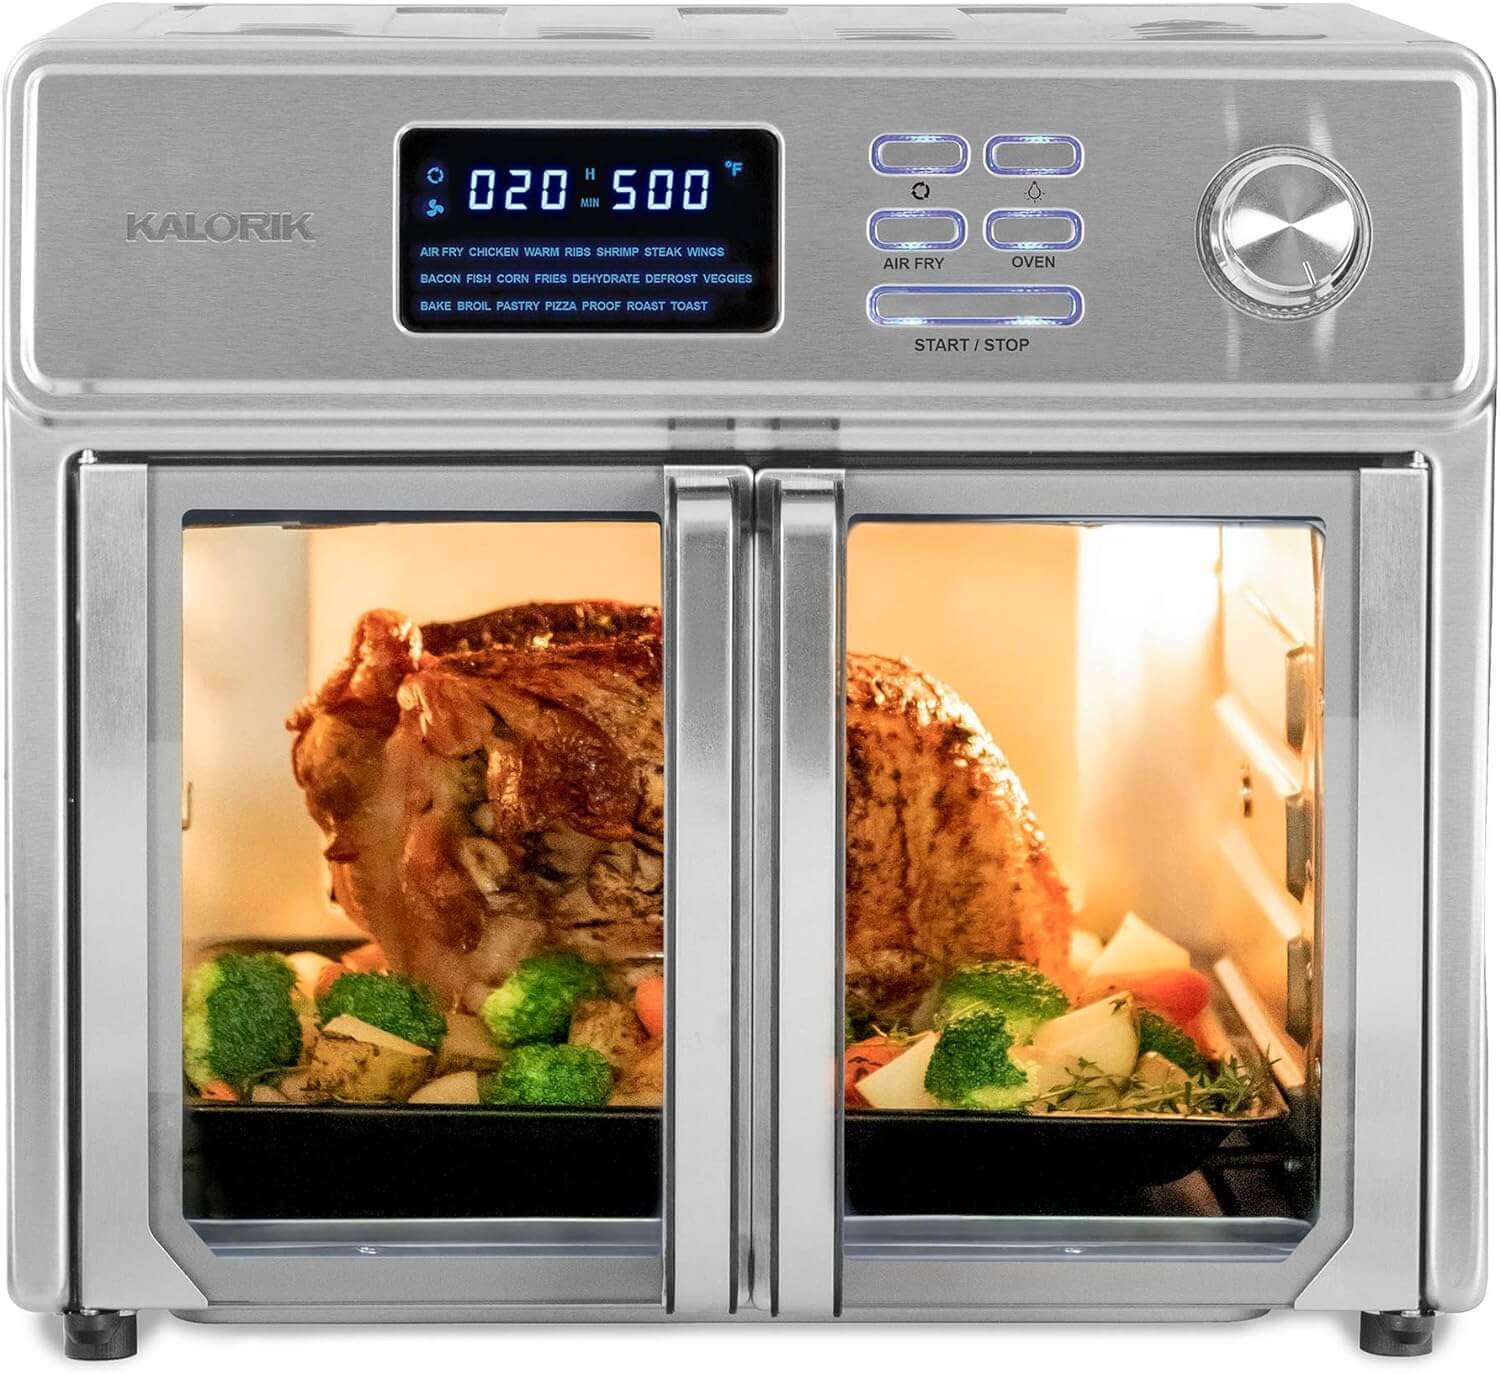 Kalorik 26-quart QT Digital Maxx Air Fryer Oven